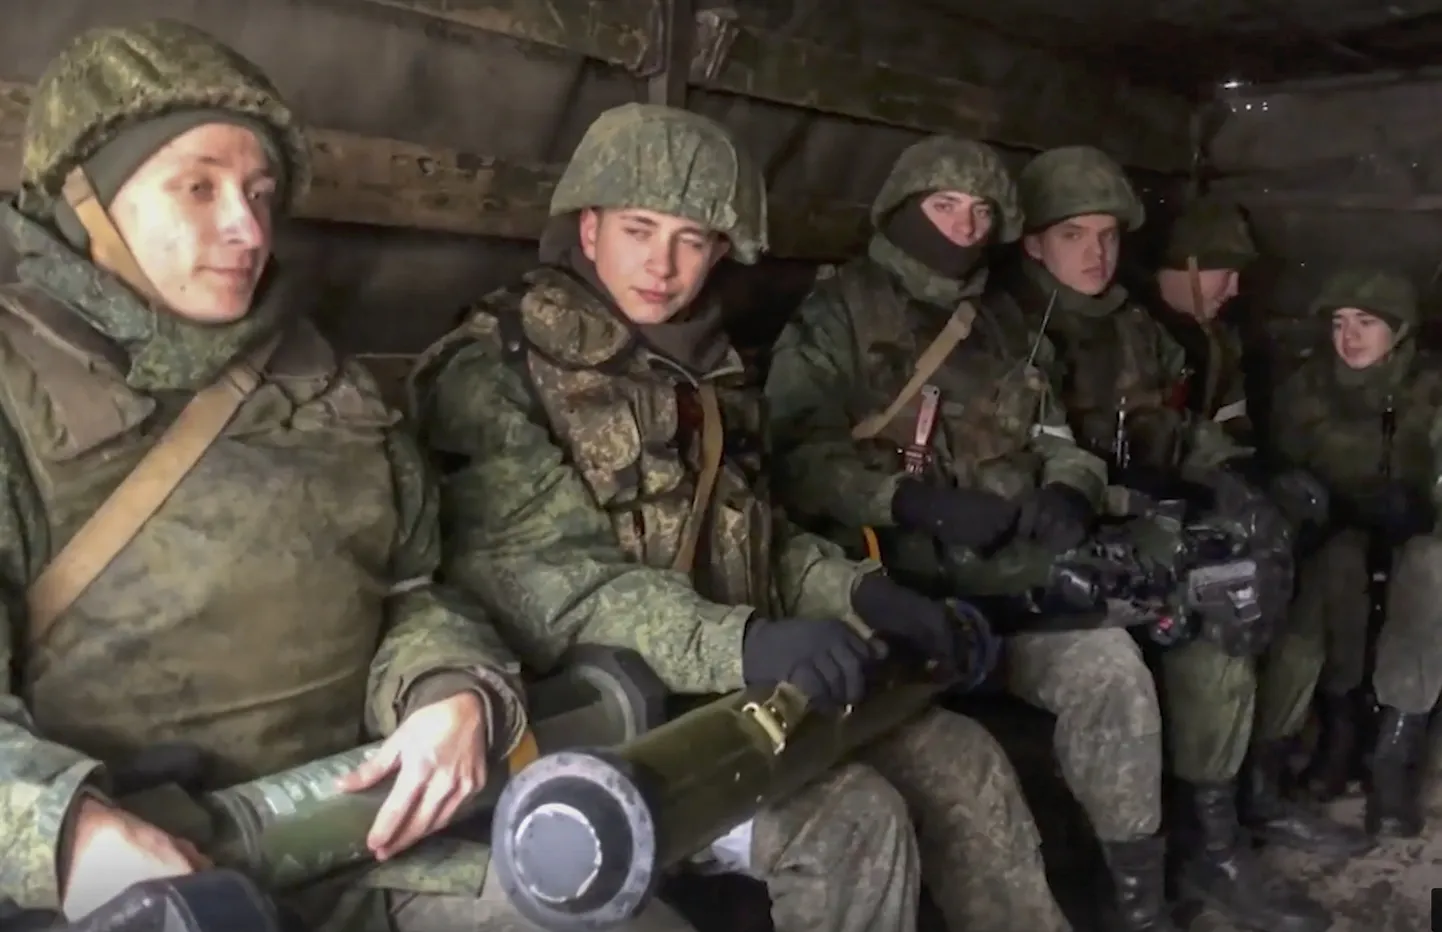 Venemaa kaitseministeeriumi avaldatud foto, millel on Vene sõdurid väidetavalt ukrainlaste poolt maha jäetud tankitõrjeraketiga. Foto on dateerimata